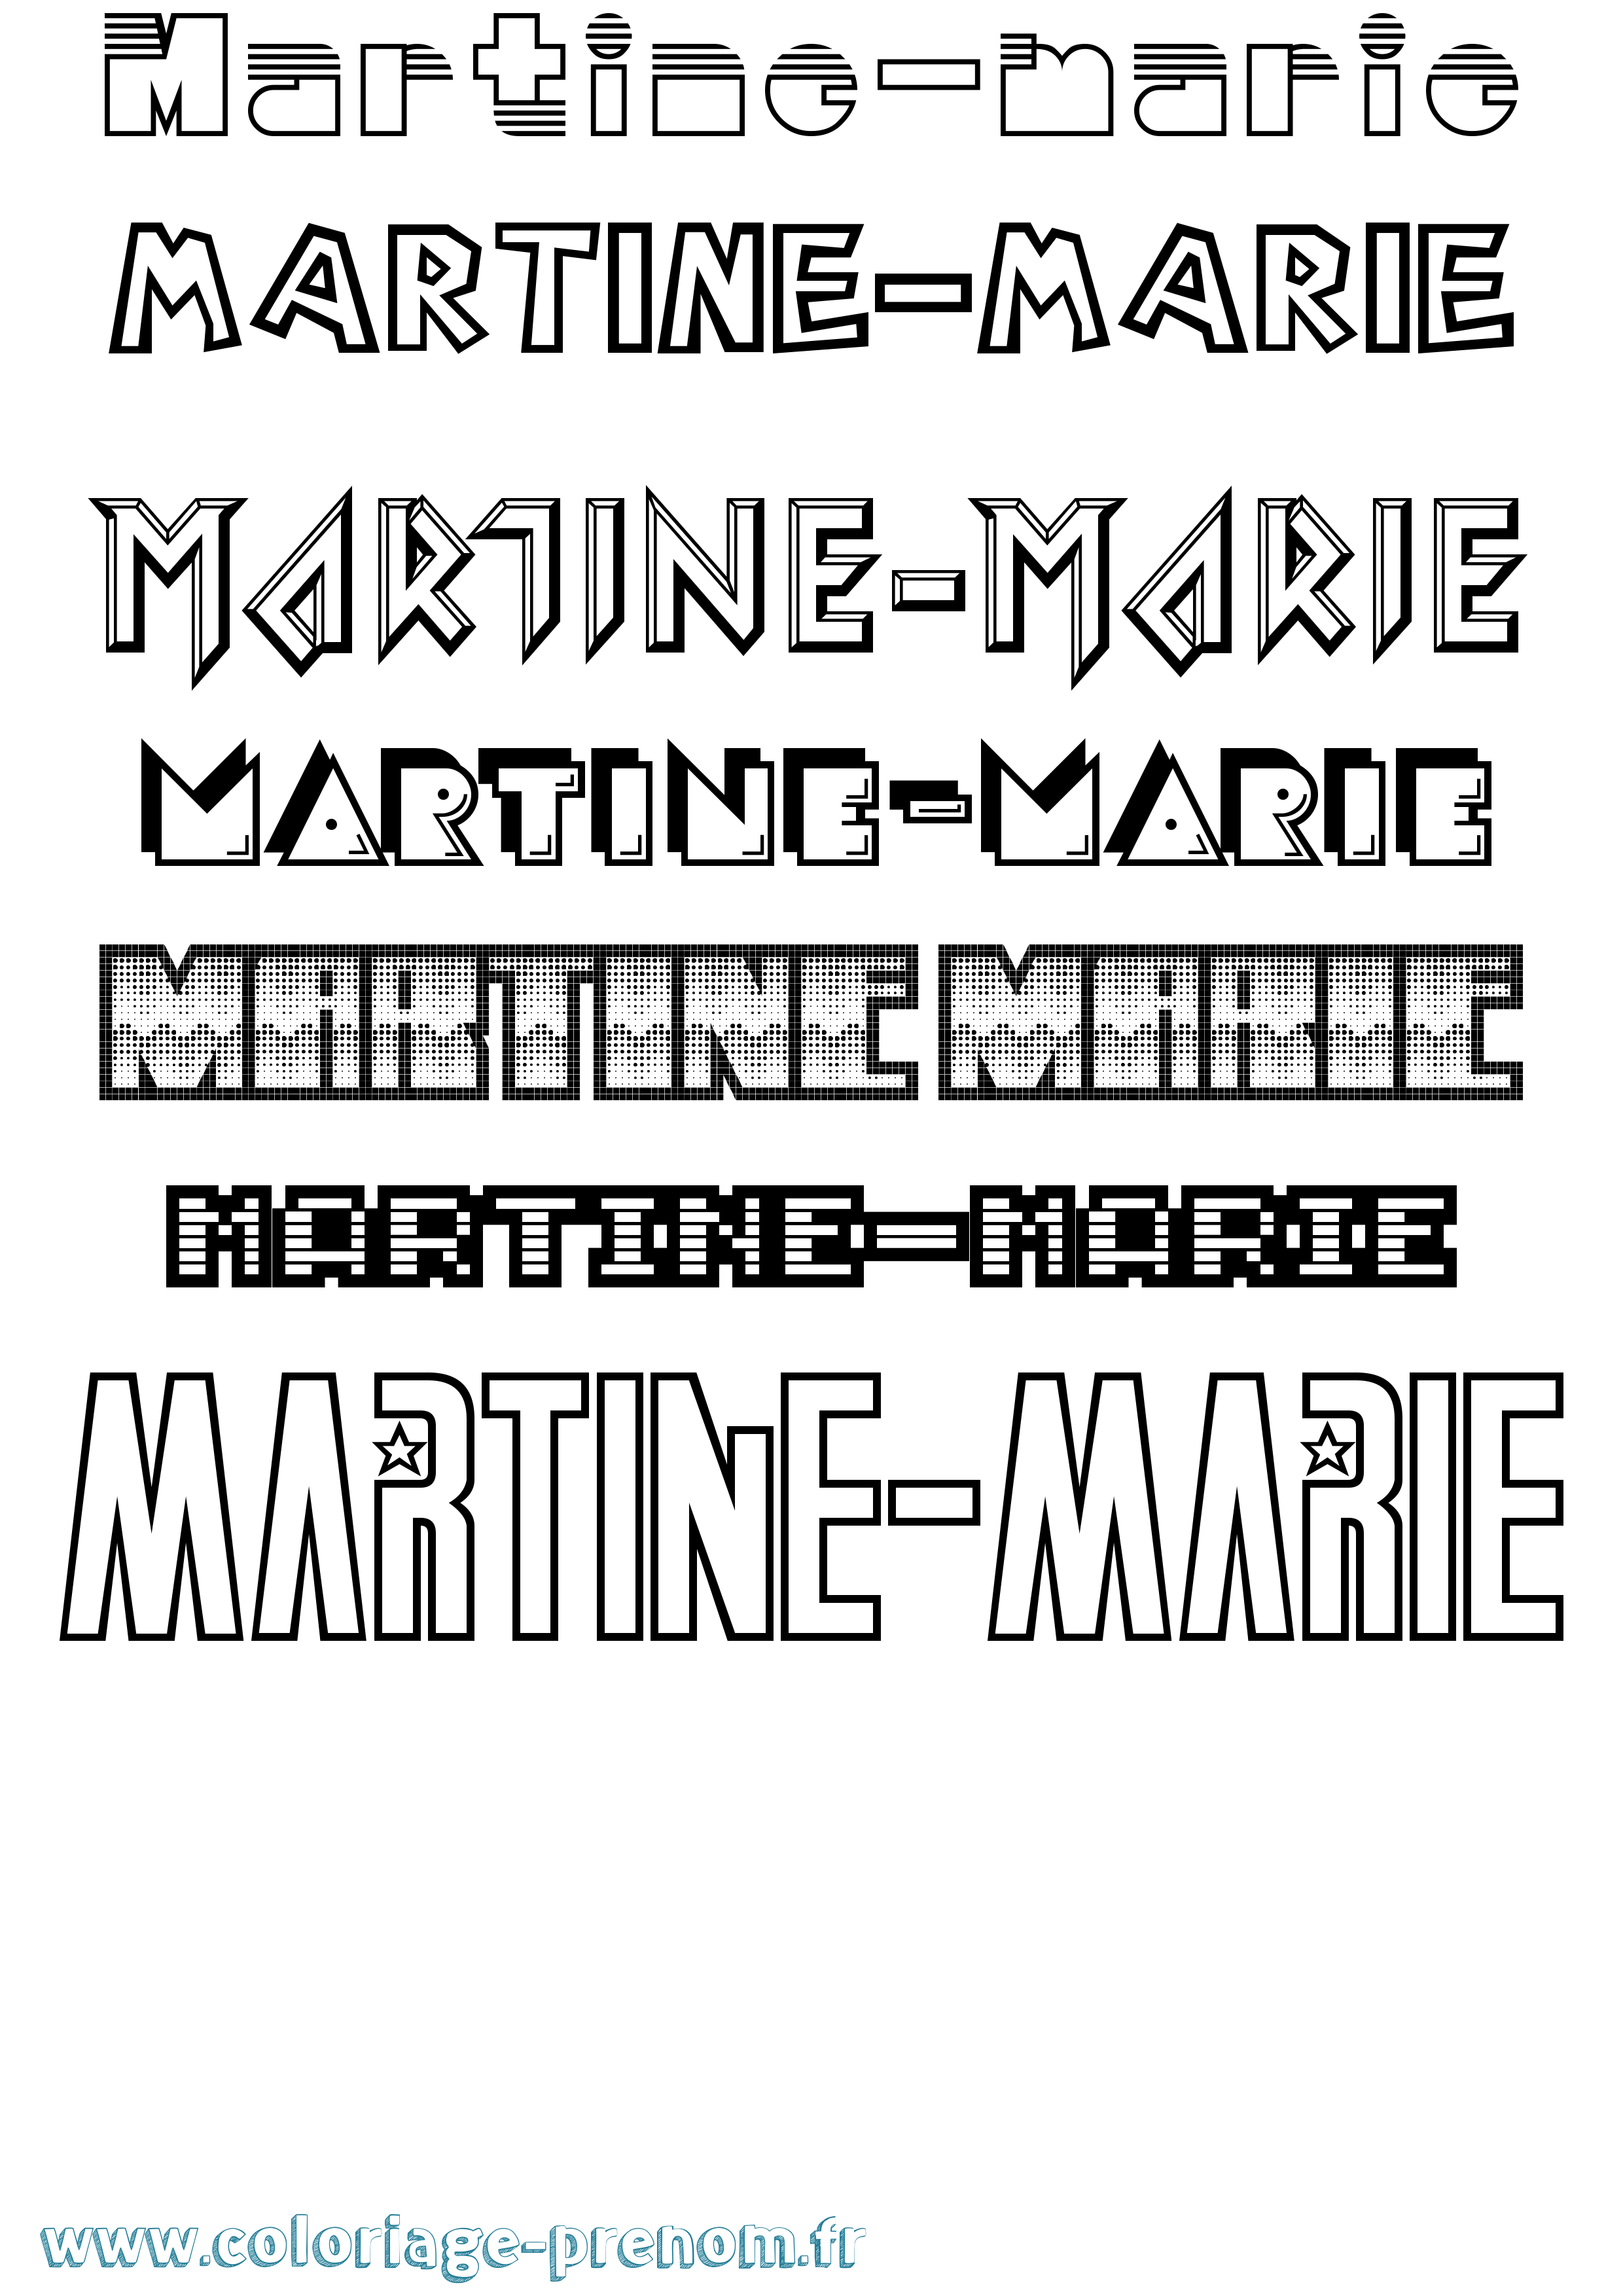 Coloriage prénom Martine-Marie Jeux Vidéos